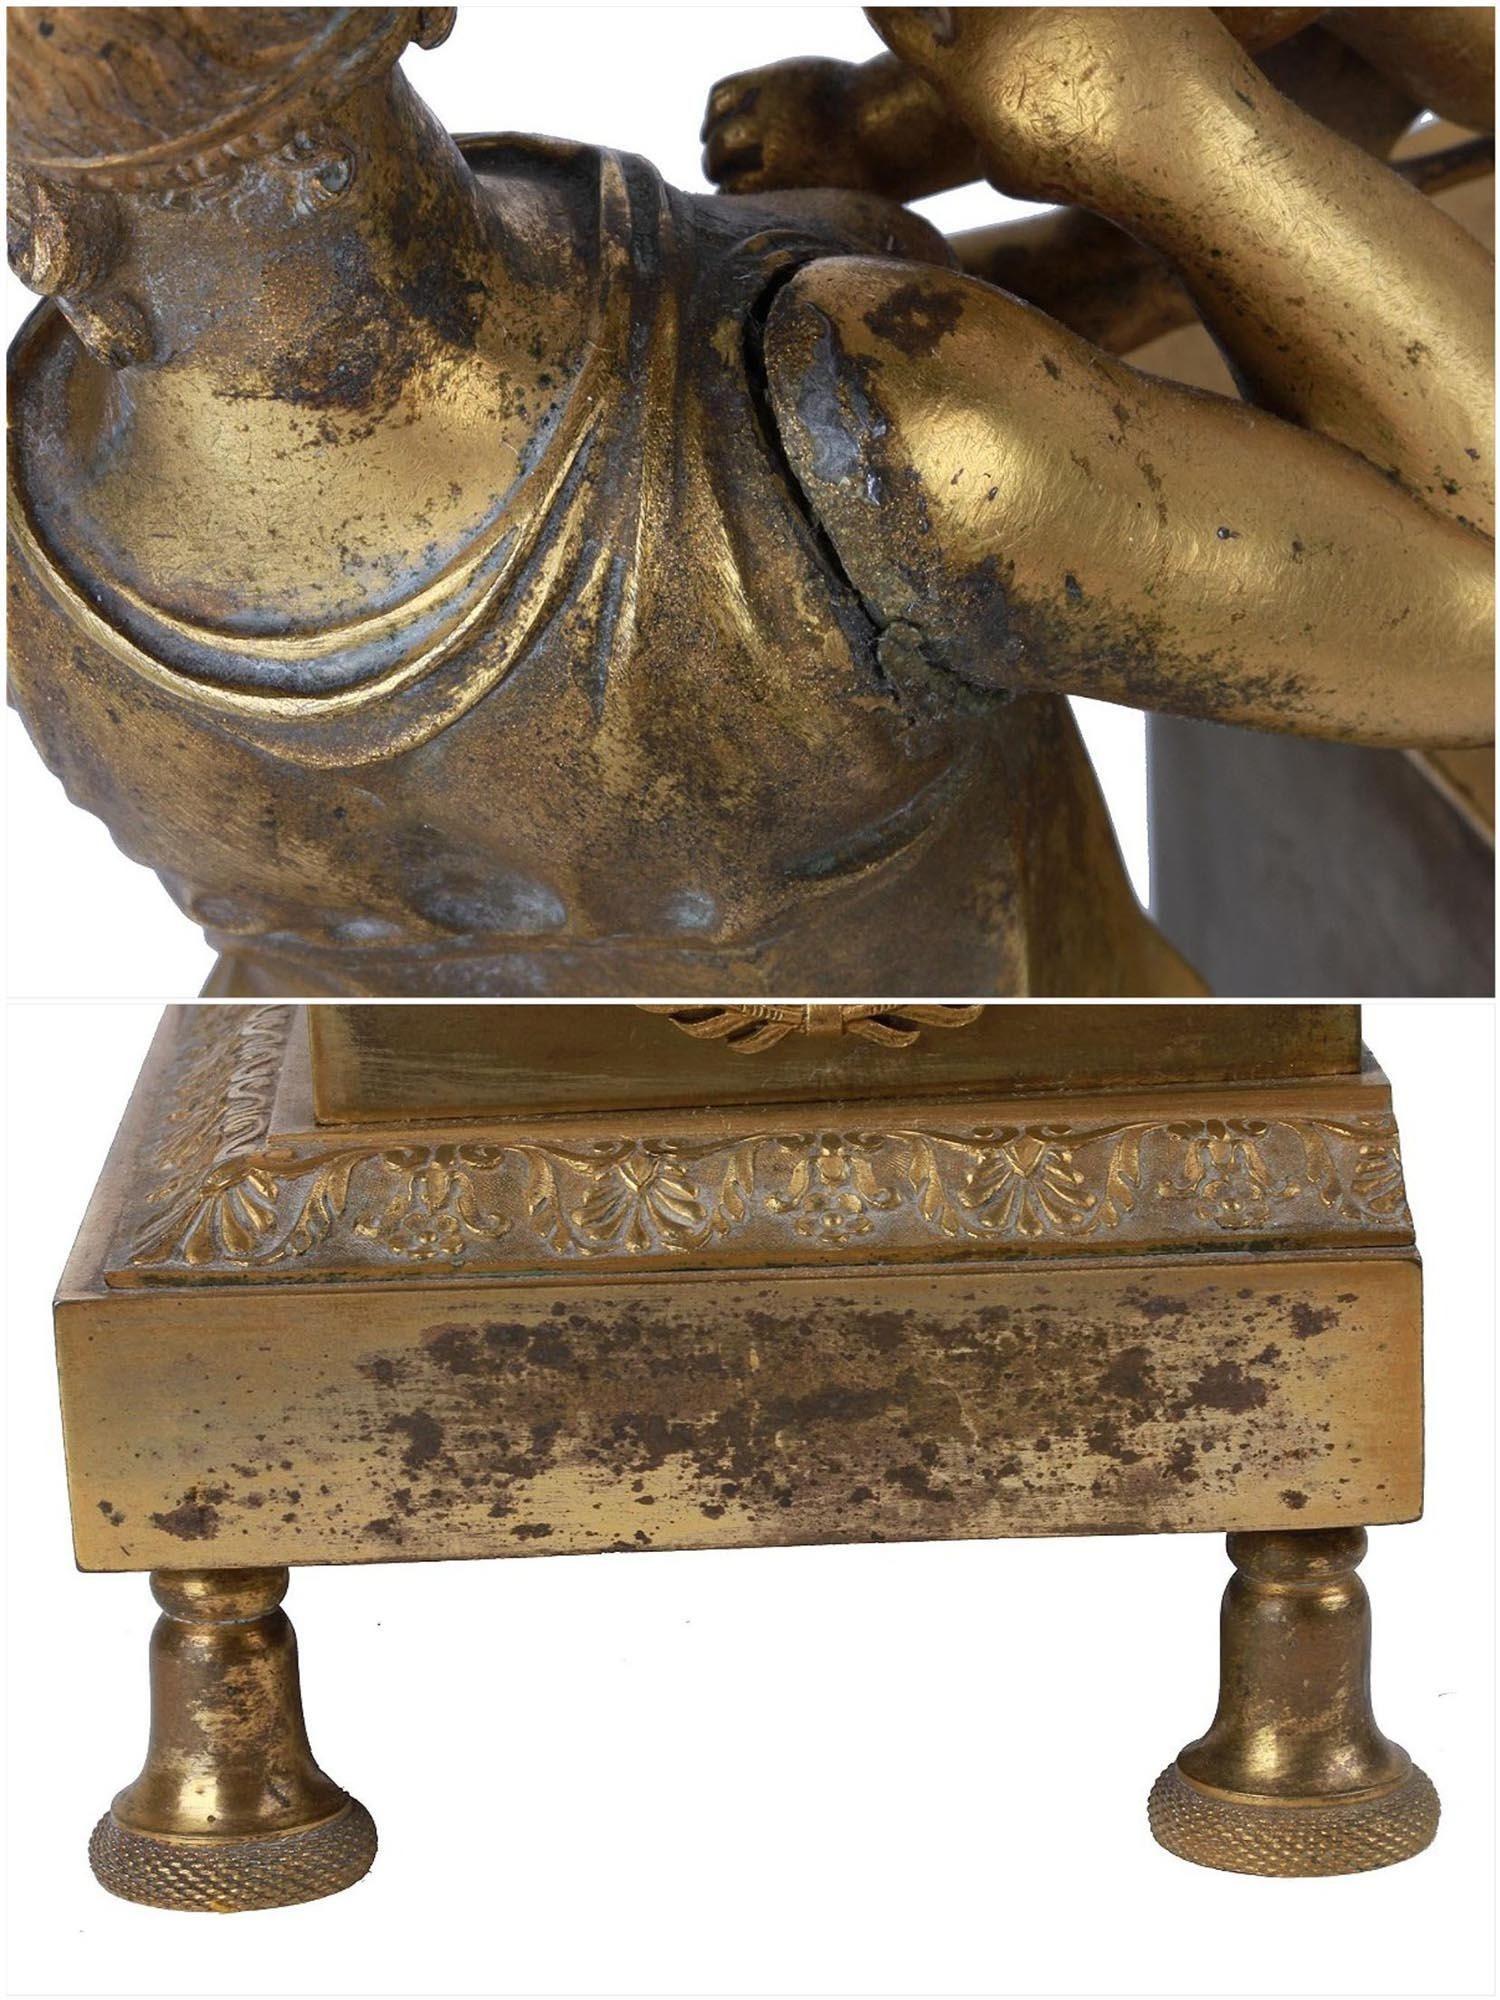 Pendule de cheminée ancienne (début du XIXe siècle) en bronze doré de style Empire représentant une jeune fille néoclassique avec un enfant.  